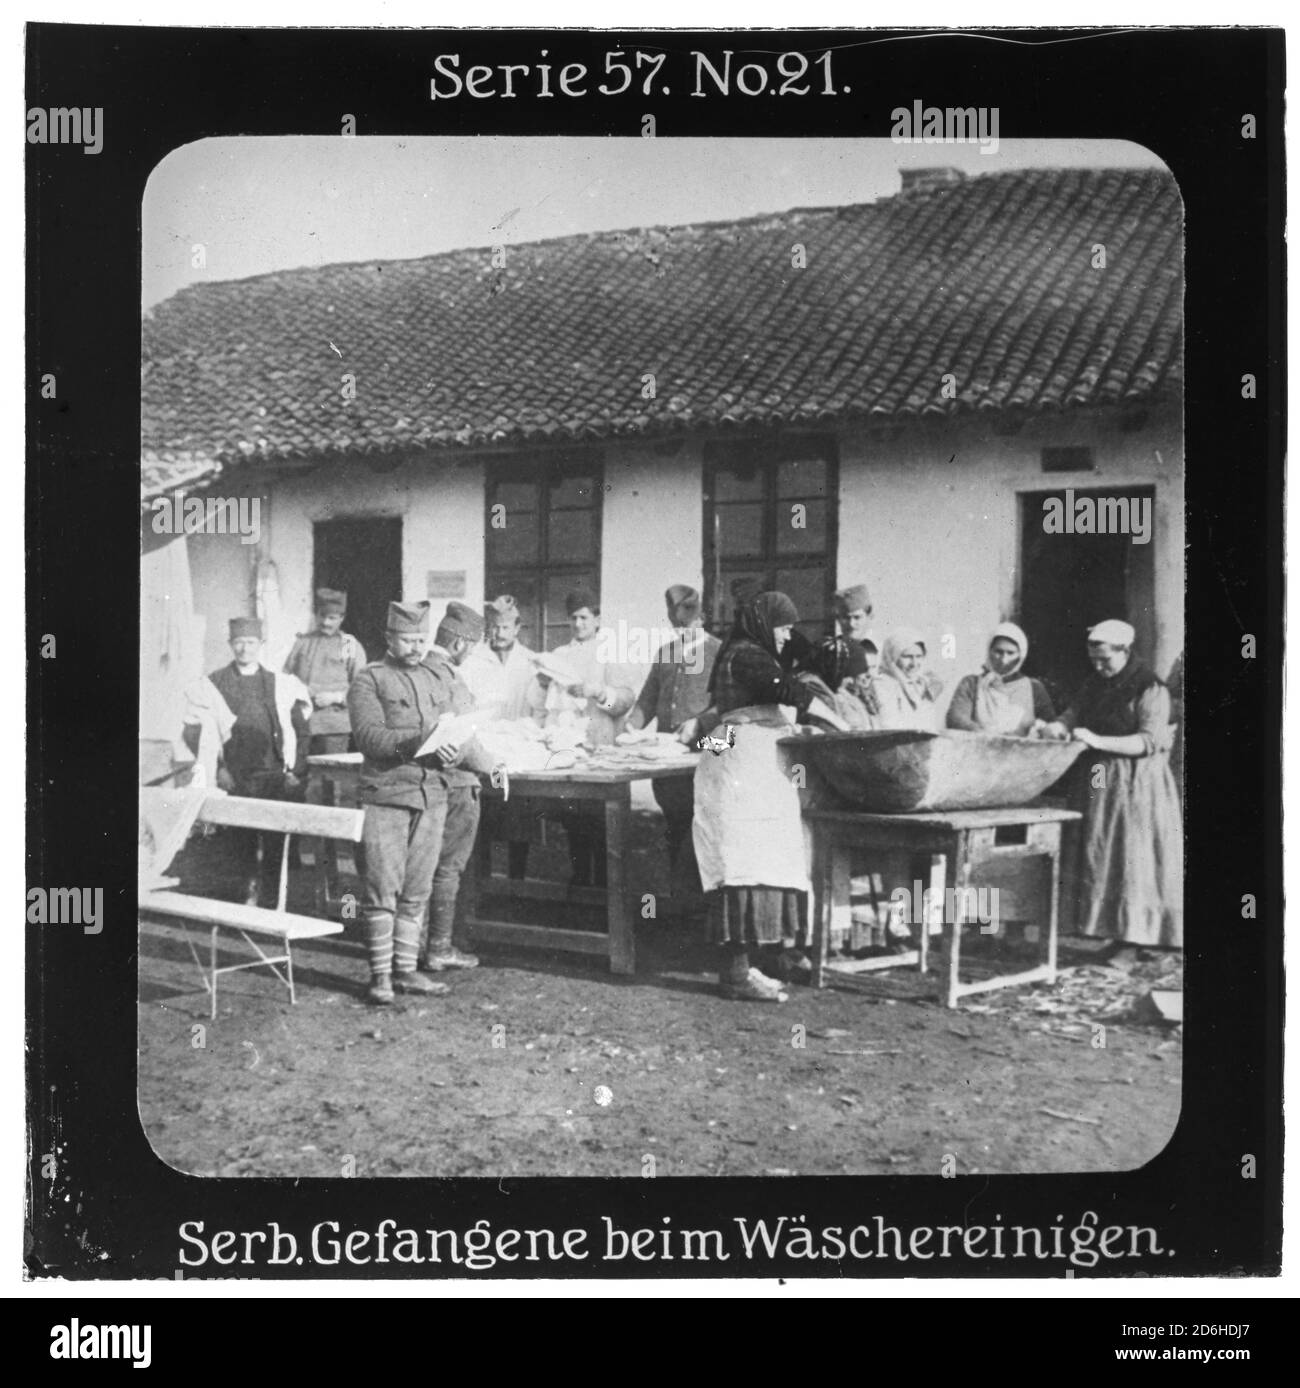 Projektion für alle - die Erobung Serbien. Serie 57. Nr. 21. Serbische Gefangene beim Wäschereinigen. Nach dem Scheitern des Serbienfeldzugs der k.u.k. Armee im Jahr 1914 wurde im Oktober 1915 mit massiver deutscher Unterstützung ein neuer Feldzug durchgeführt. Die Firma „Projection für alle“ wurde 1905 von Max Skladanowsky (1861-1939) gegründet. Sie producated bis 1928 fast 100 Serien zu je 24 Glasdias im Format 8,3 x 8,3 cm im sog. Bromsilber-Gelatin-Trockenplatten Verfahren. Die Serien umfasster Städte, Länder, Landschaften, Märchen und Sagen, das Alte Testament u. den 1. Weltkrieg. Stockfoto